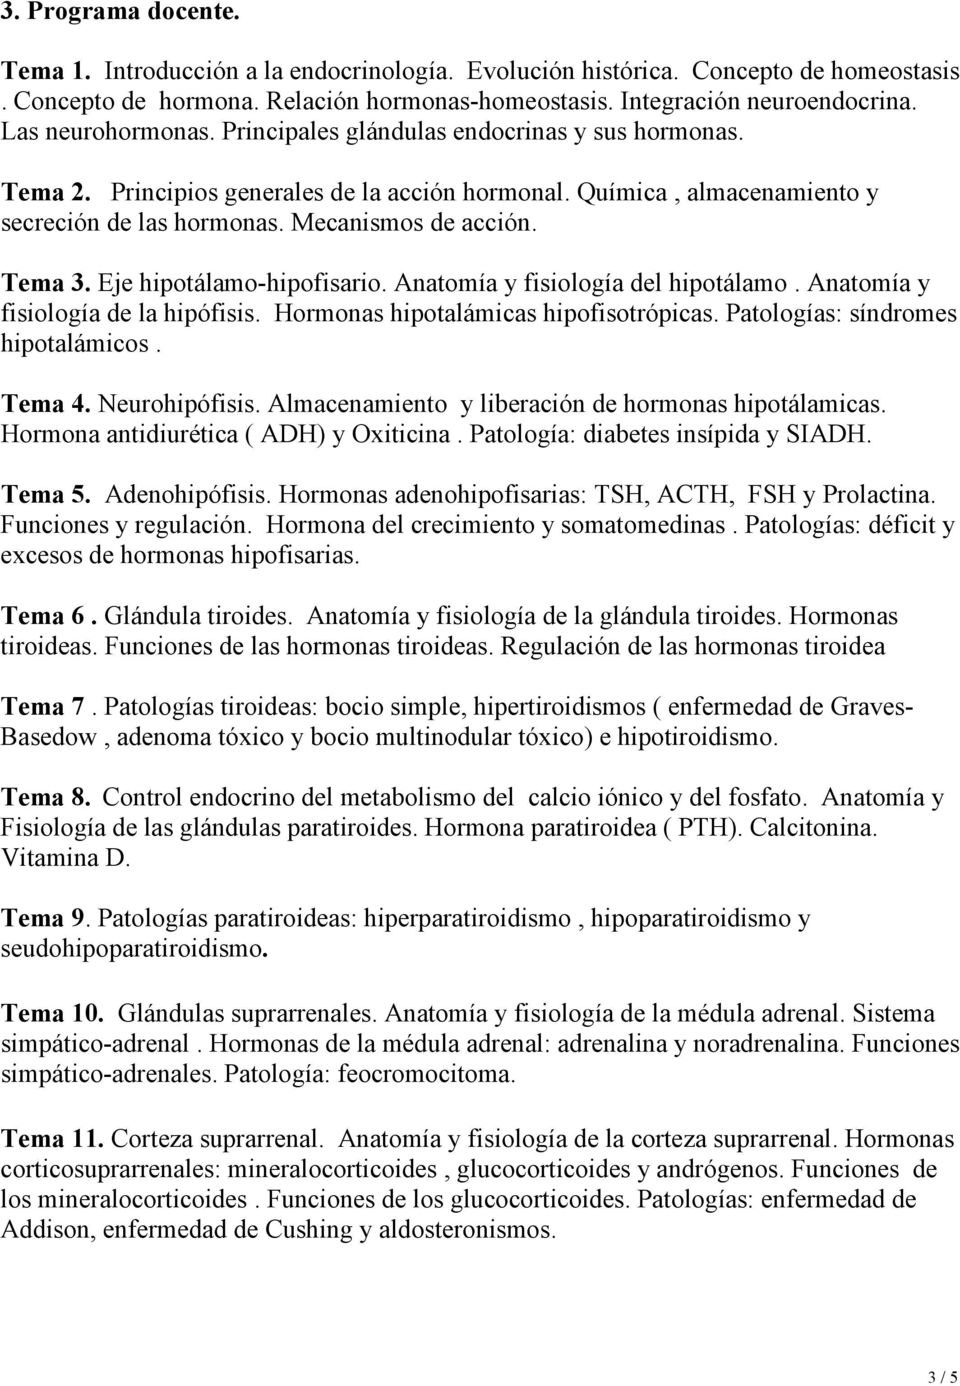 Tema 3. Eje hipotálamo-hipofisario. Anatomía y fisiología del hipotálamo. Anatomía y fisiología de la hipófisis. Hormonas hipotalámicas hipofisotrópicas. Patologías: síndromes hipotalámicos. Tema 4.